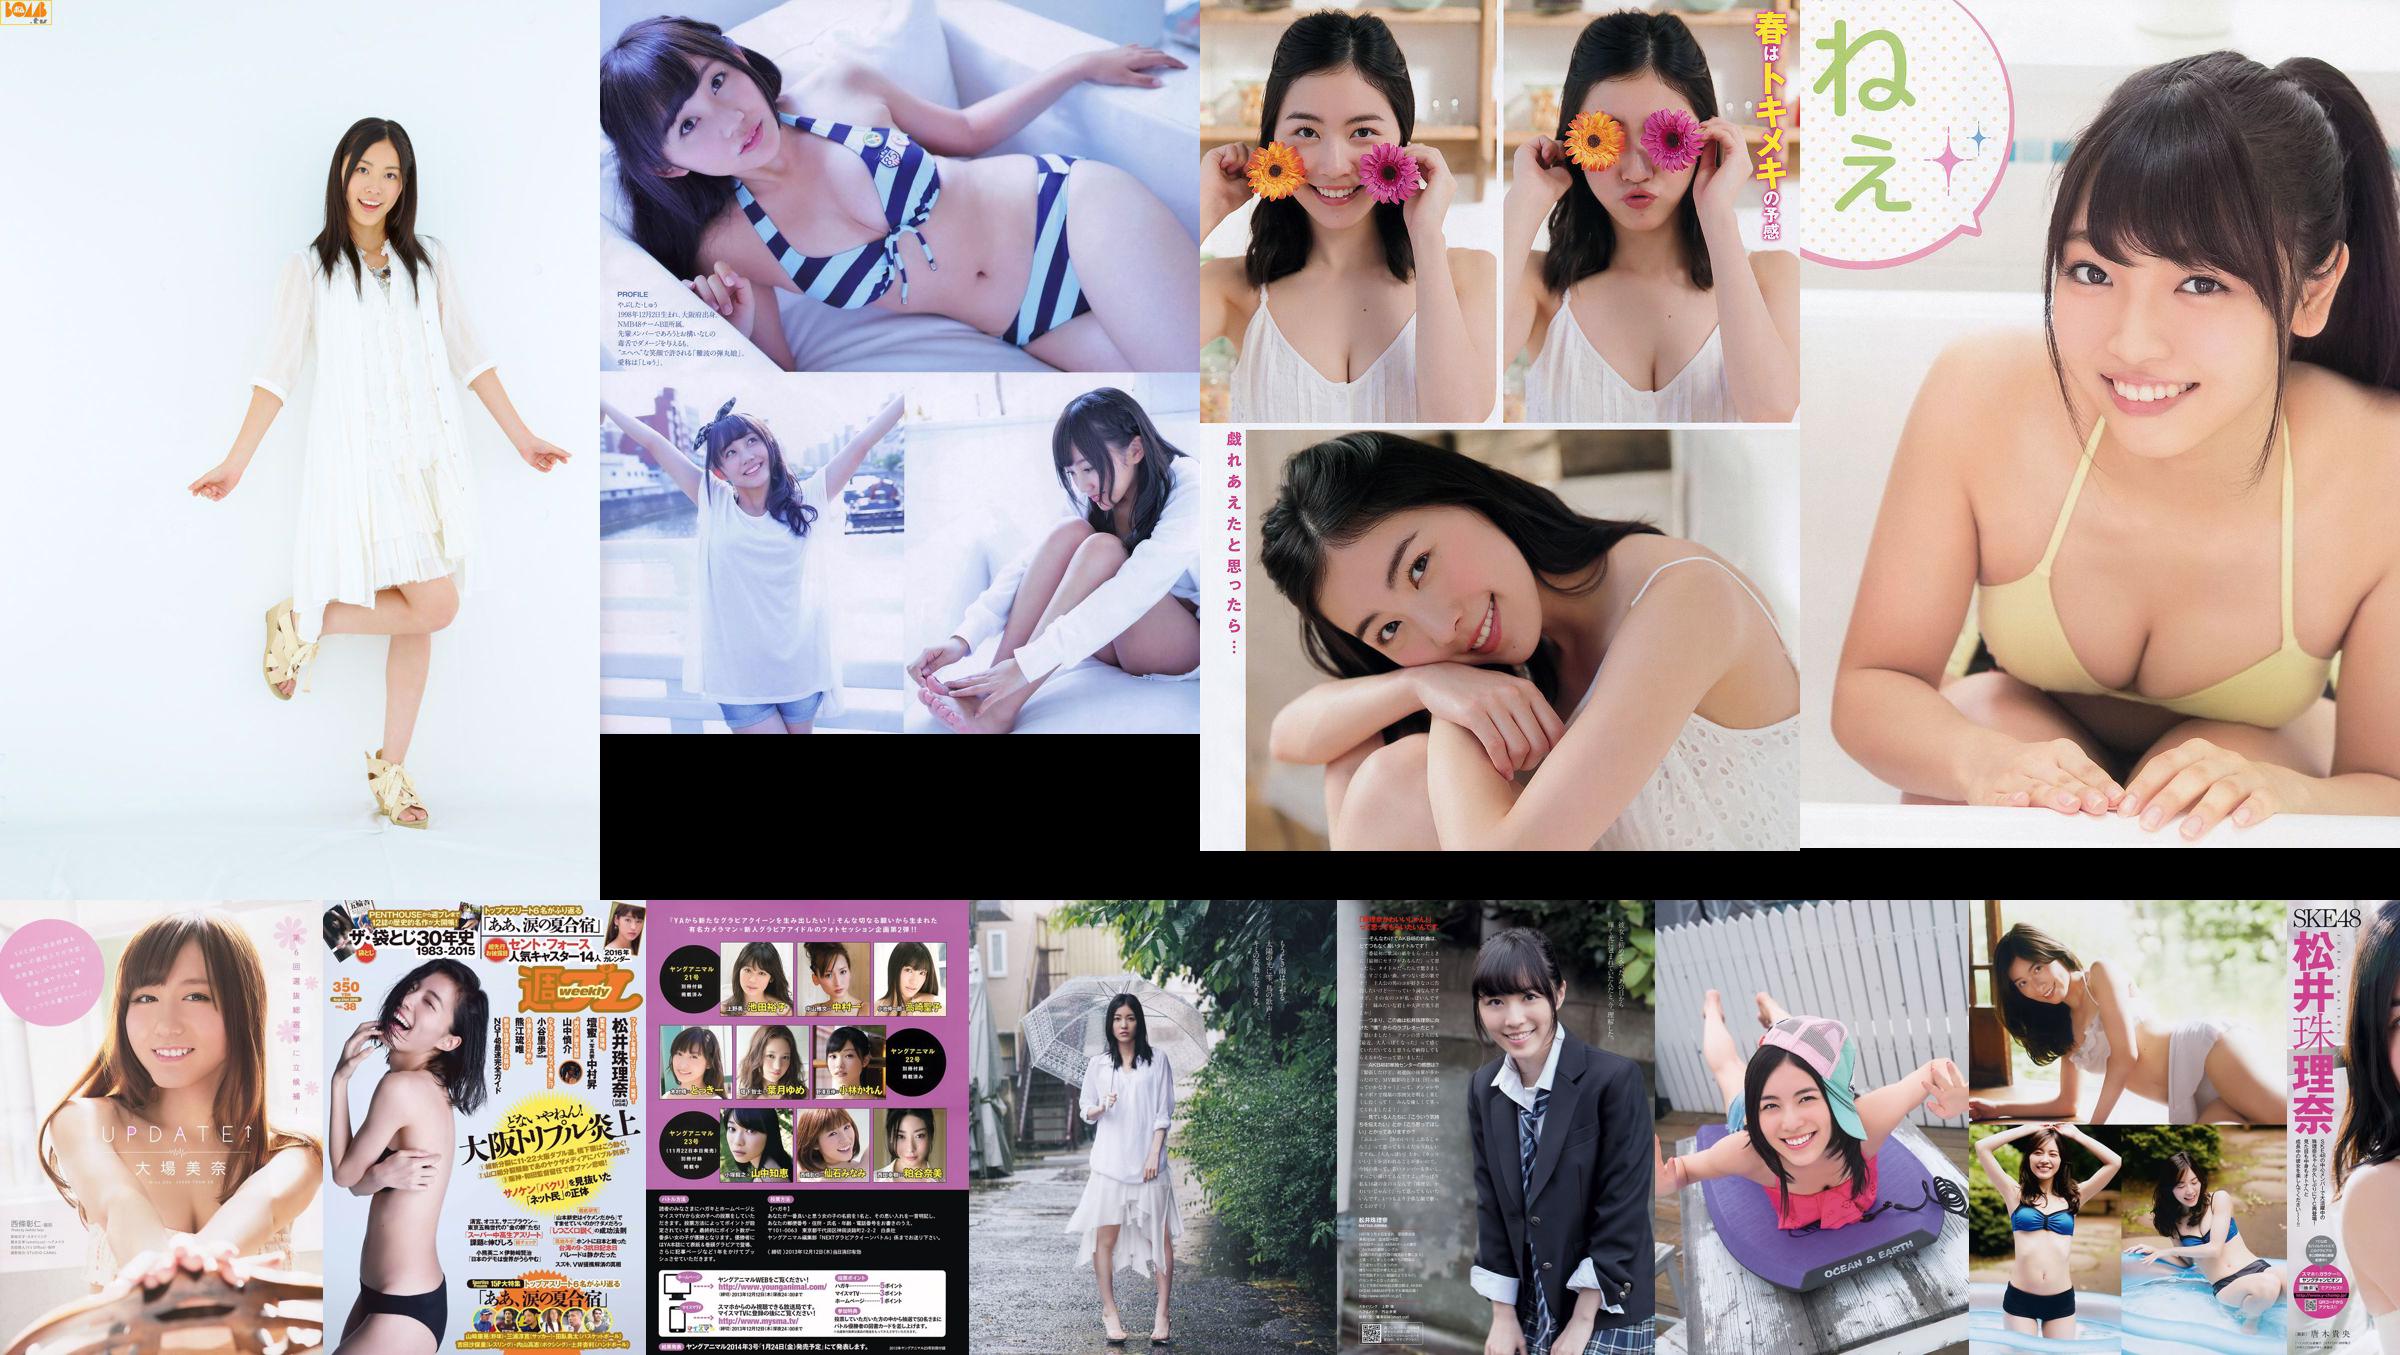 [BUBKA] Jurina Matsui Rena Kato Shu Yabushita 2014.09 Foto No.e9db41 Seite 1